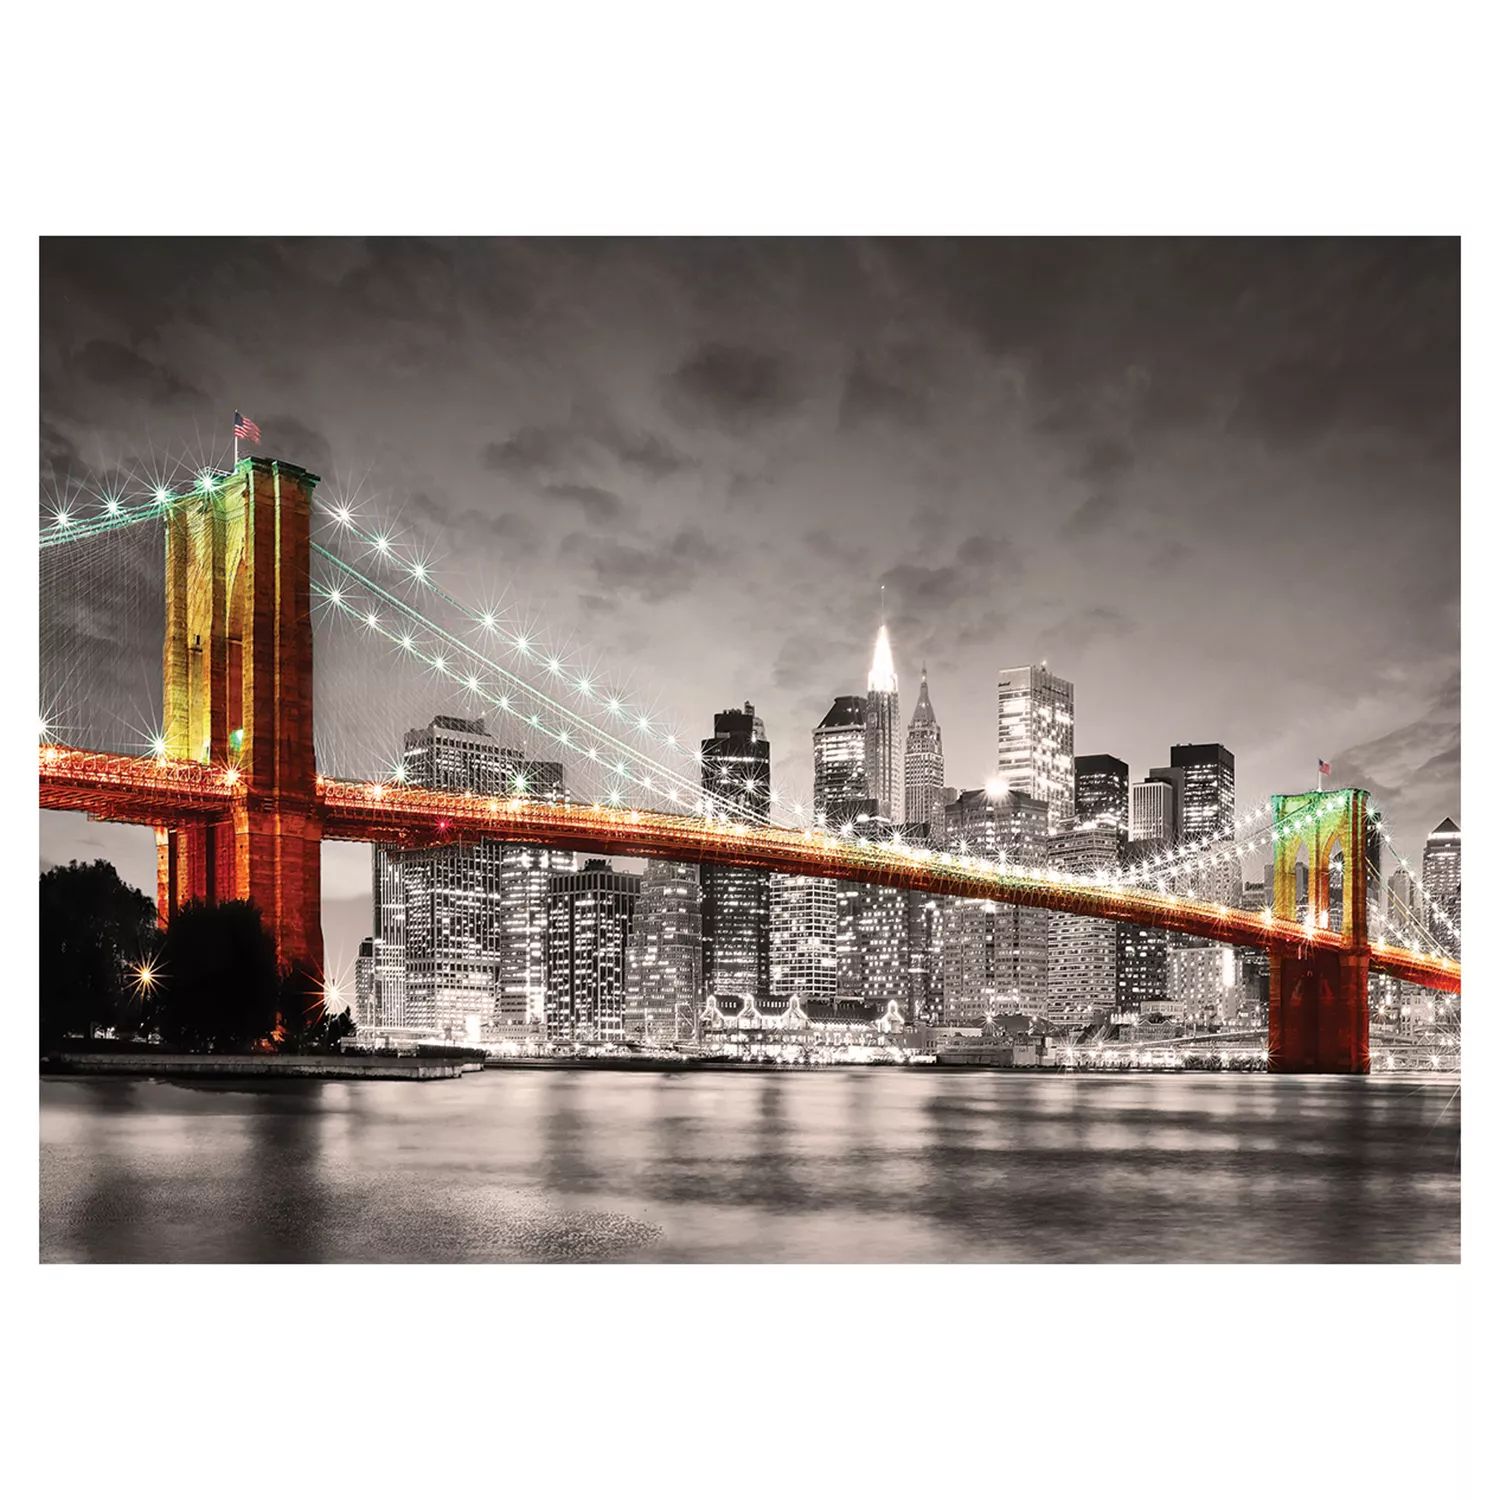 Еврографика 1000 шт. Городская коллекция Нью-Йорк Бруклинский мост Пазл Eurographics